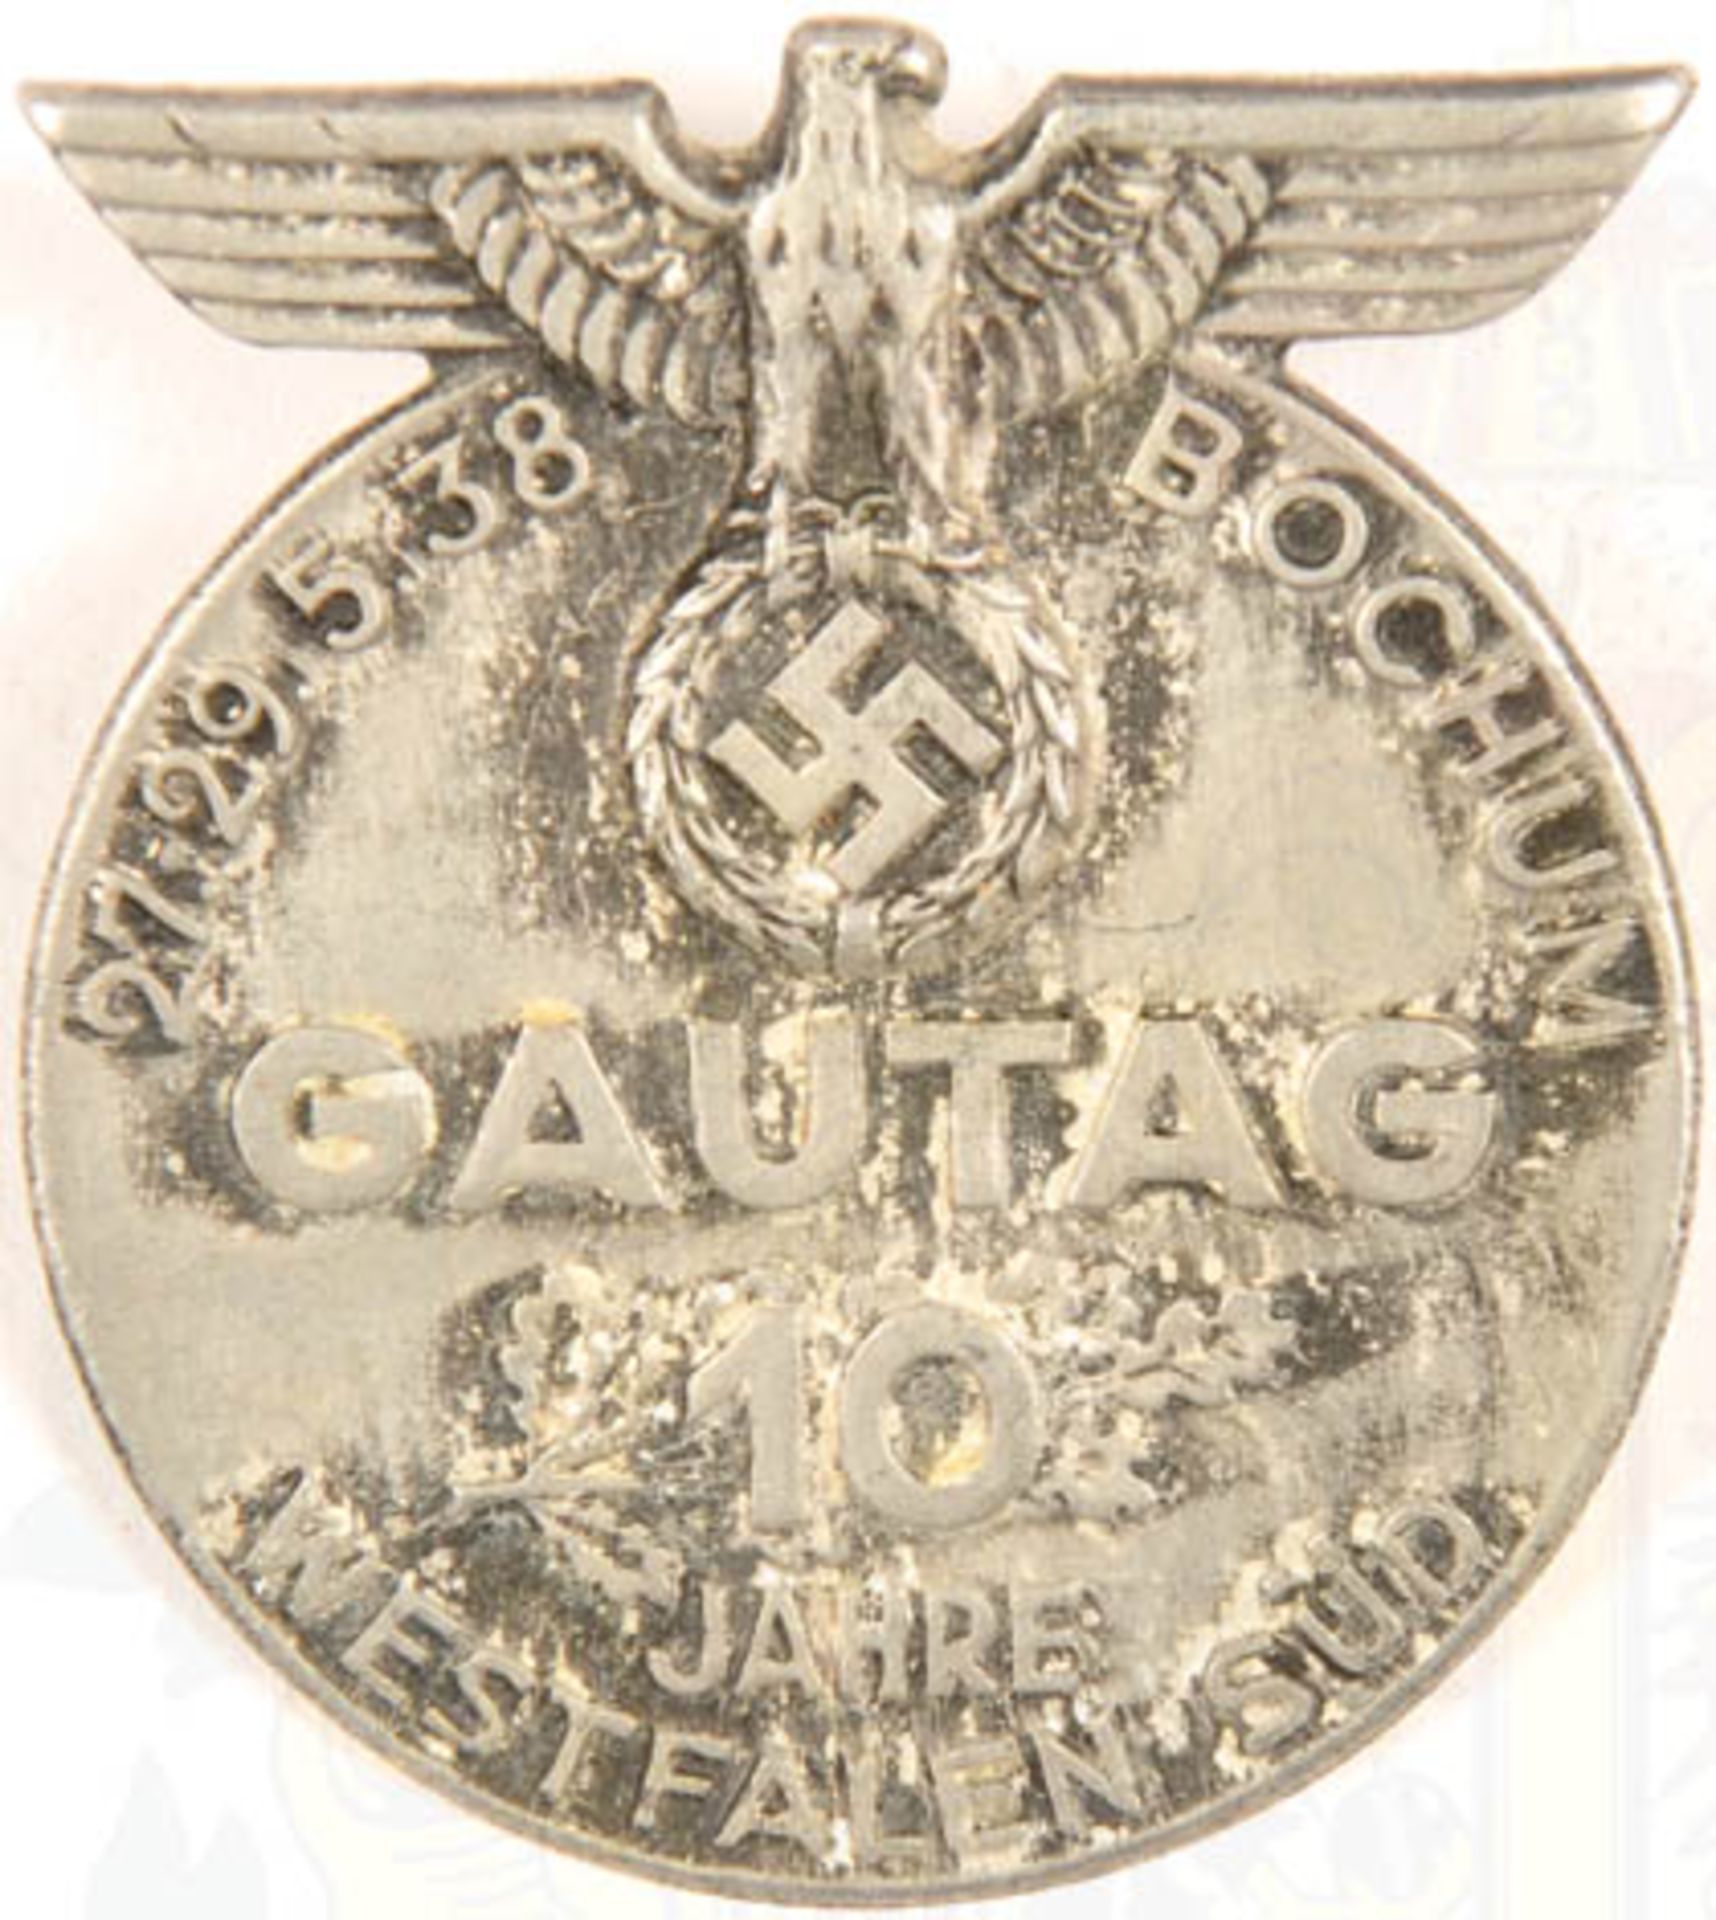 10 JAHRE GAU WESTFALEN-SÜD, Bochum 1938, Aluminium, massiv, Herst. „Pleuger & Voss Lüdenscheid“